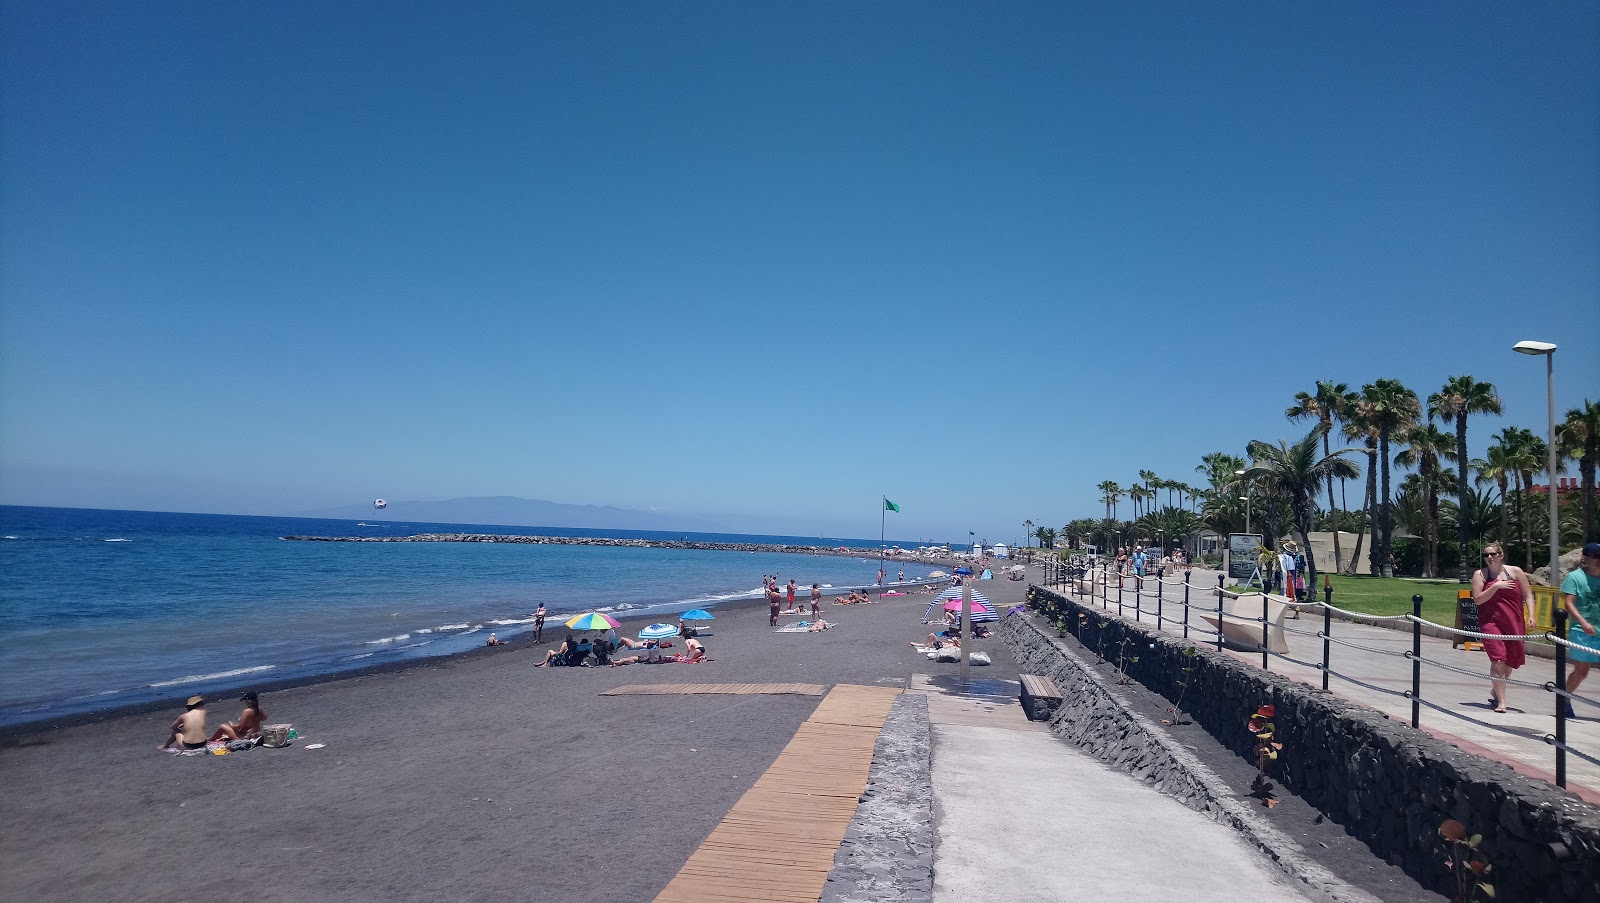 Playa El Beril的照片 带有微海湾